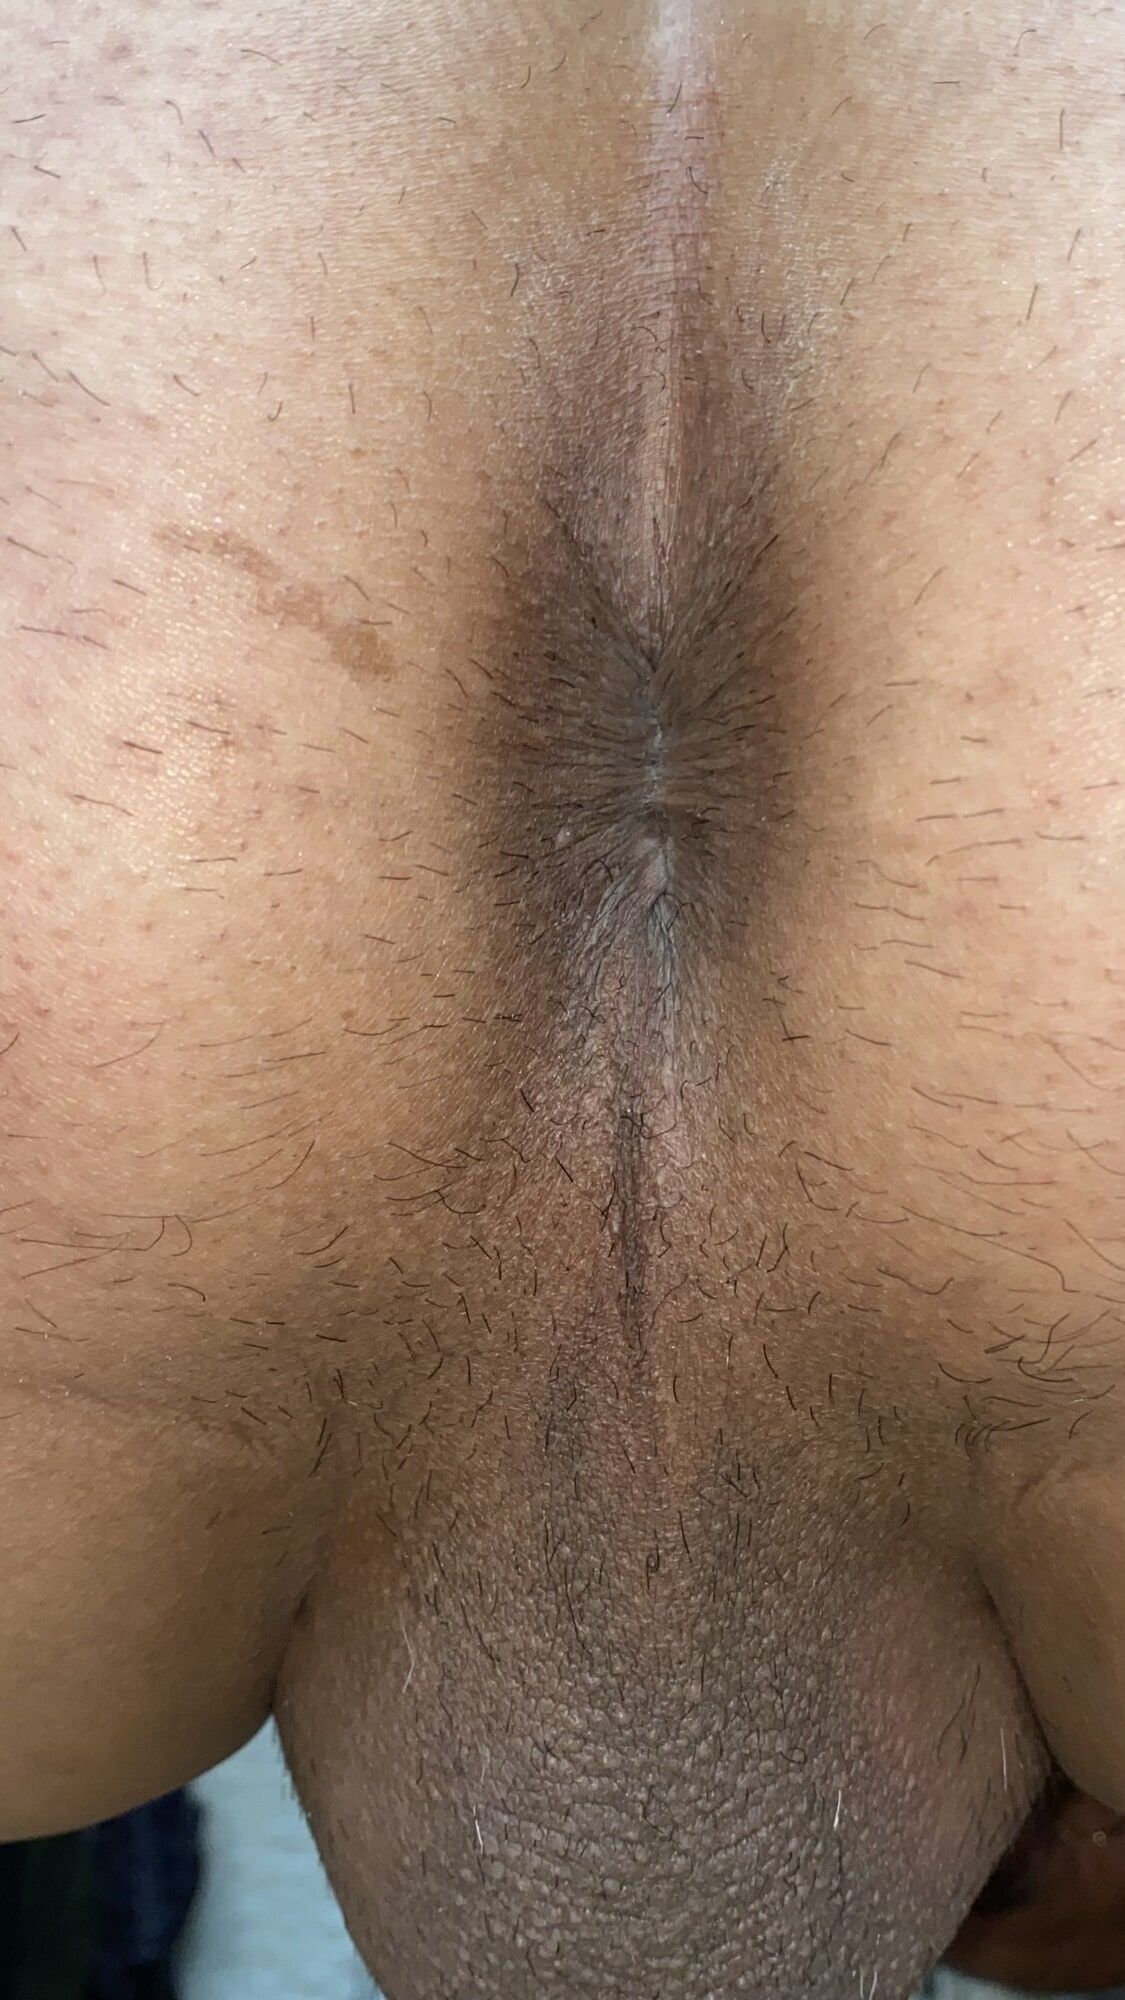 Close-up of a man's anus #30